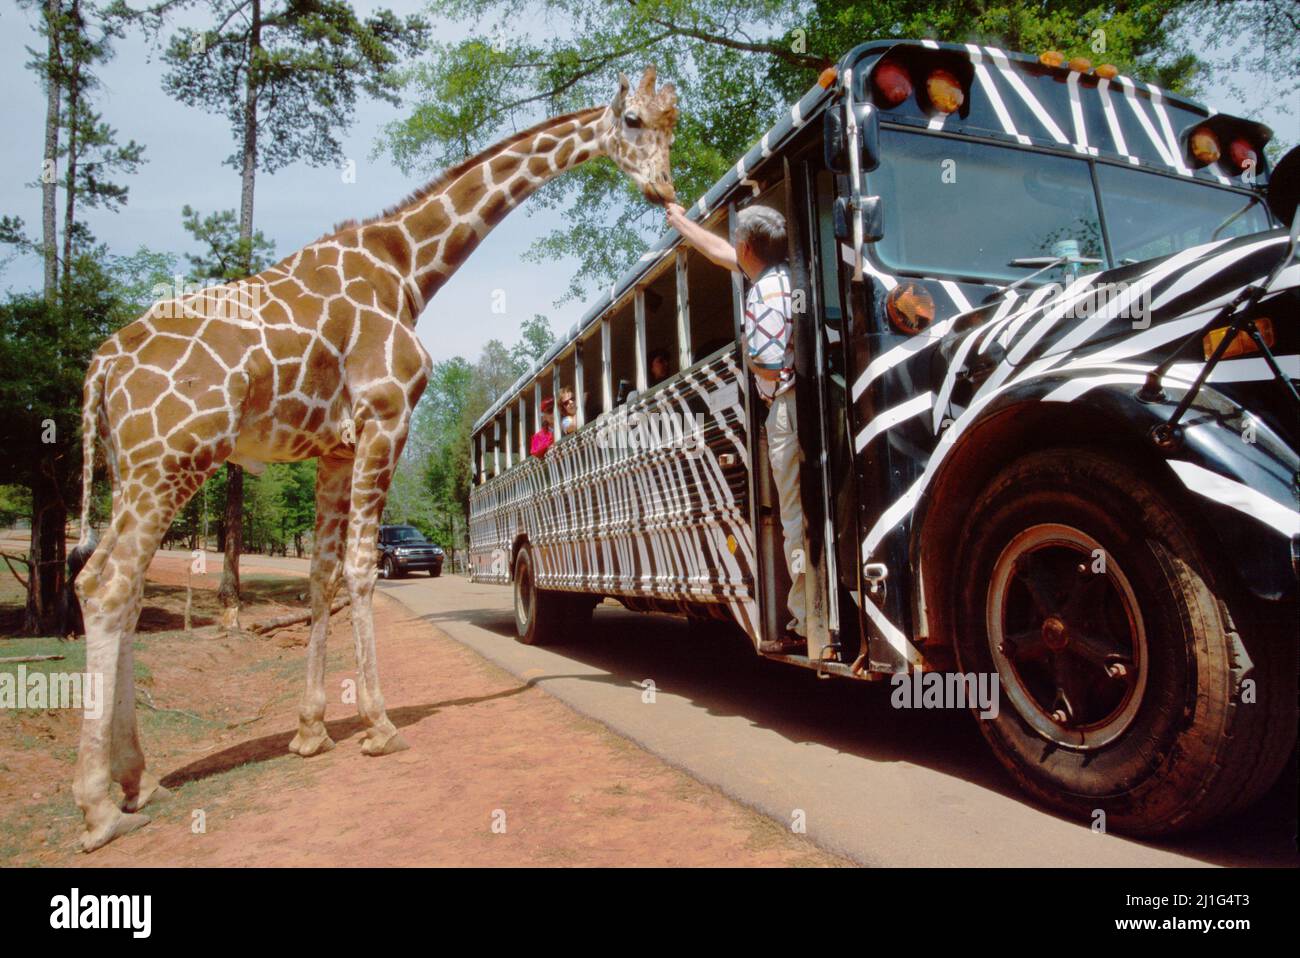 Georgia Pine Mountain Wild Animal Safari, visite en bus camouflé pour nourrir l'attraction touristique de la girafe, Banque D'Images